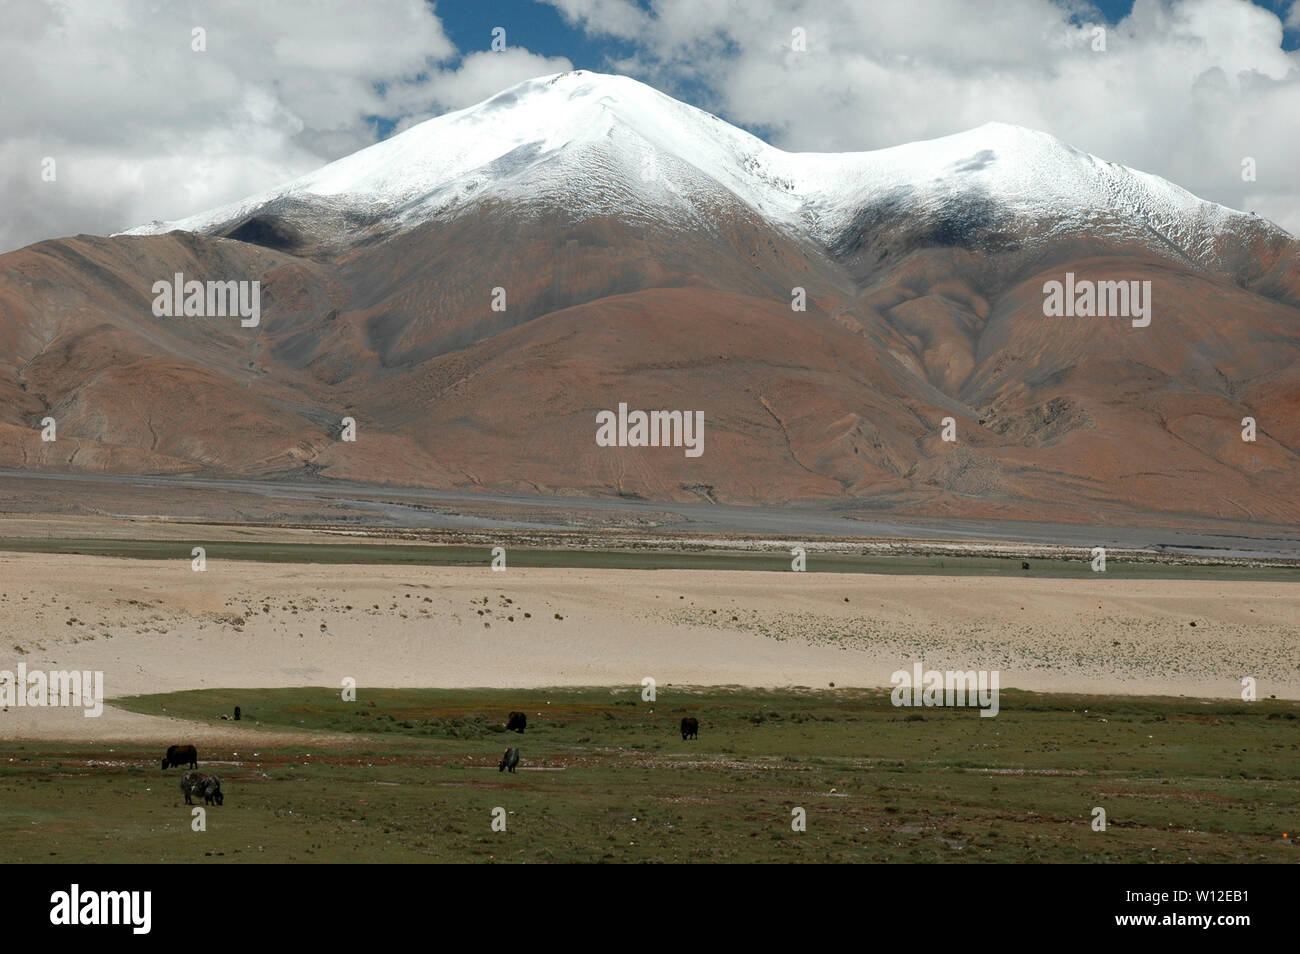 Los yaks pastan en el valle entre los picos nevados de las montañas marrones Foto de stock